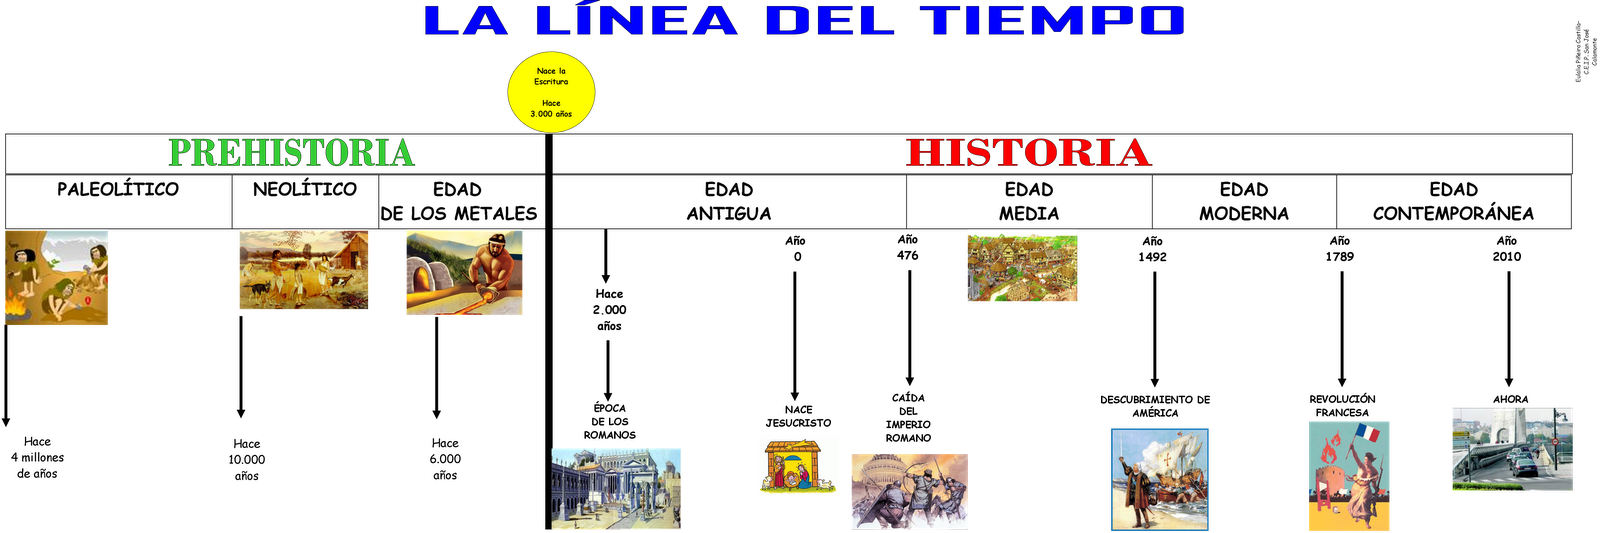 Resultado de imagen de etapas de la historia linea del tiempo